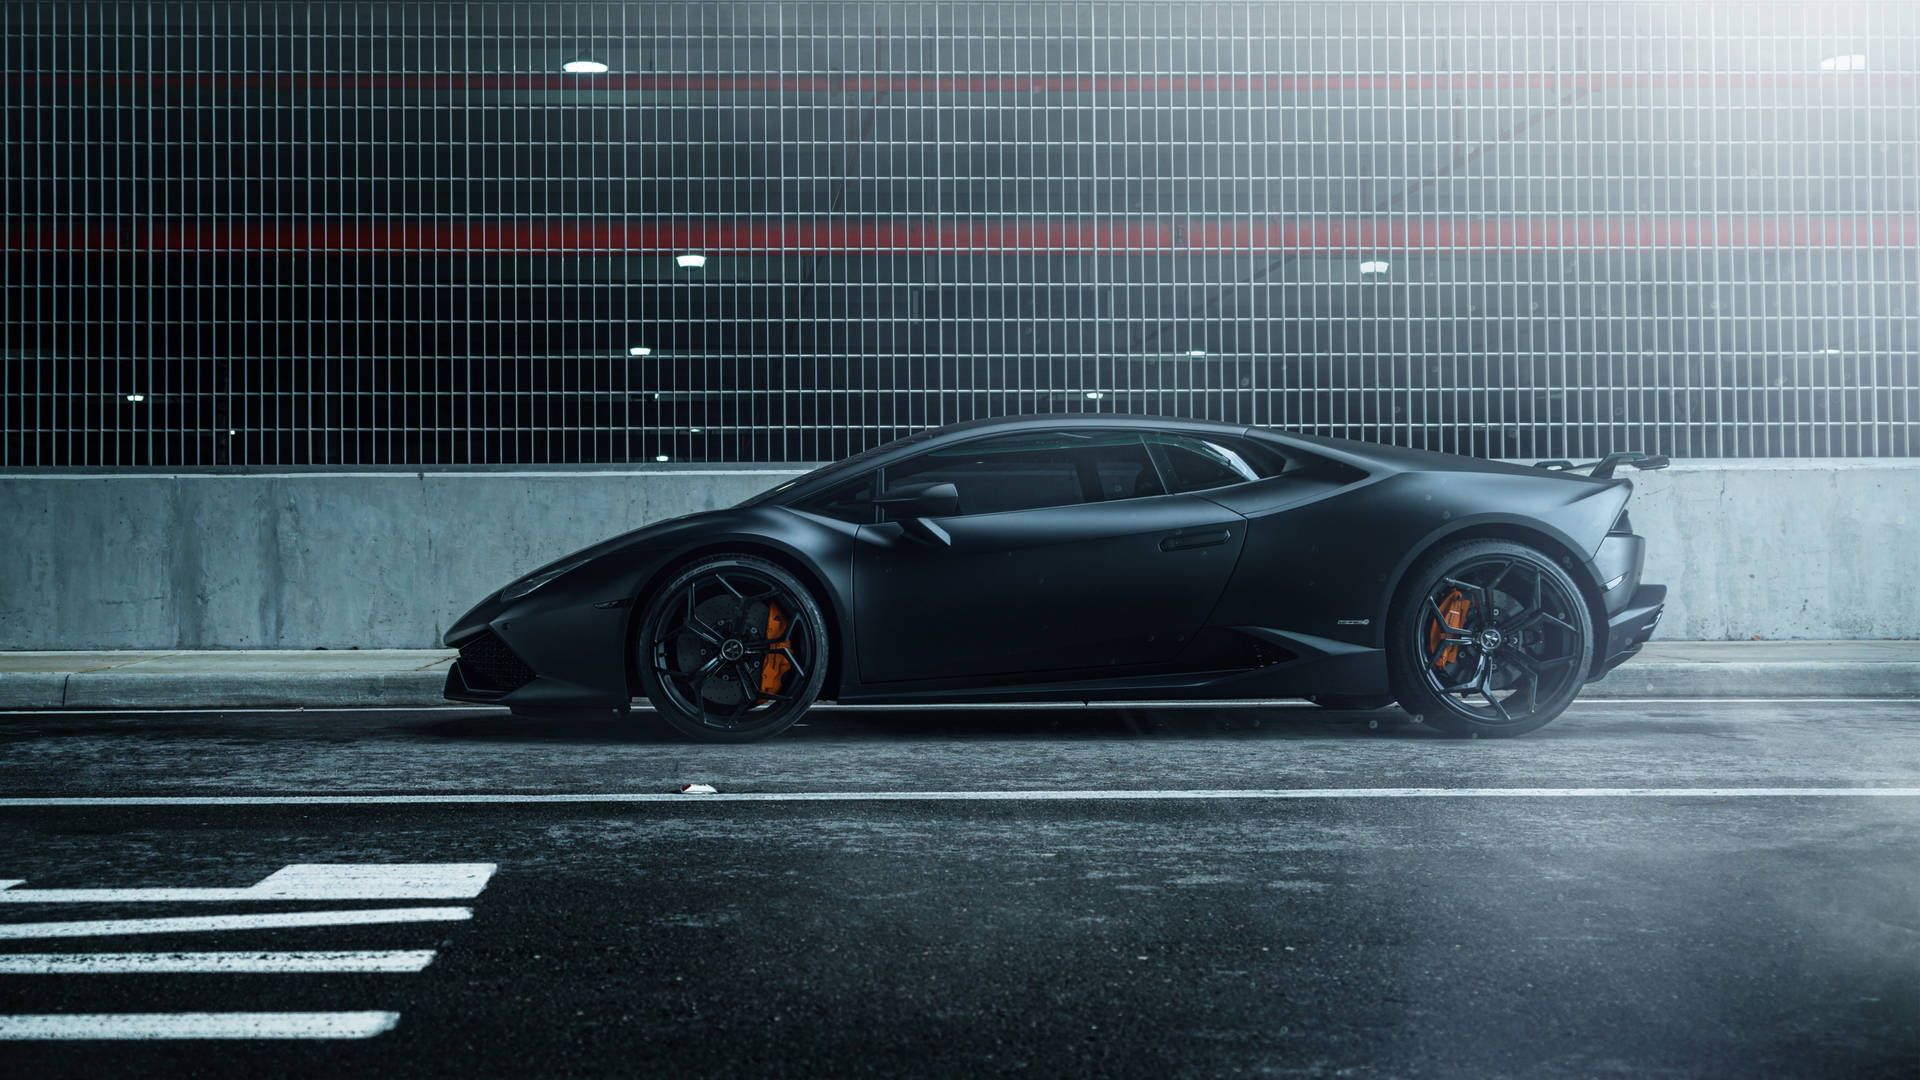 2018 Lamborghini Huracán Black Sports Cars Wallpaper